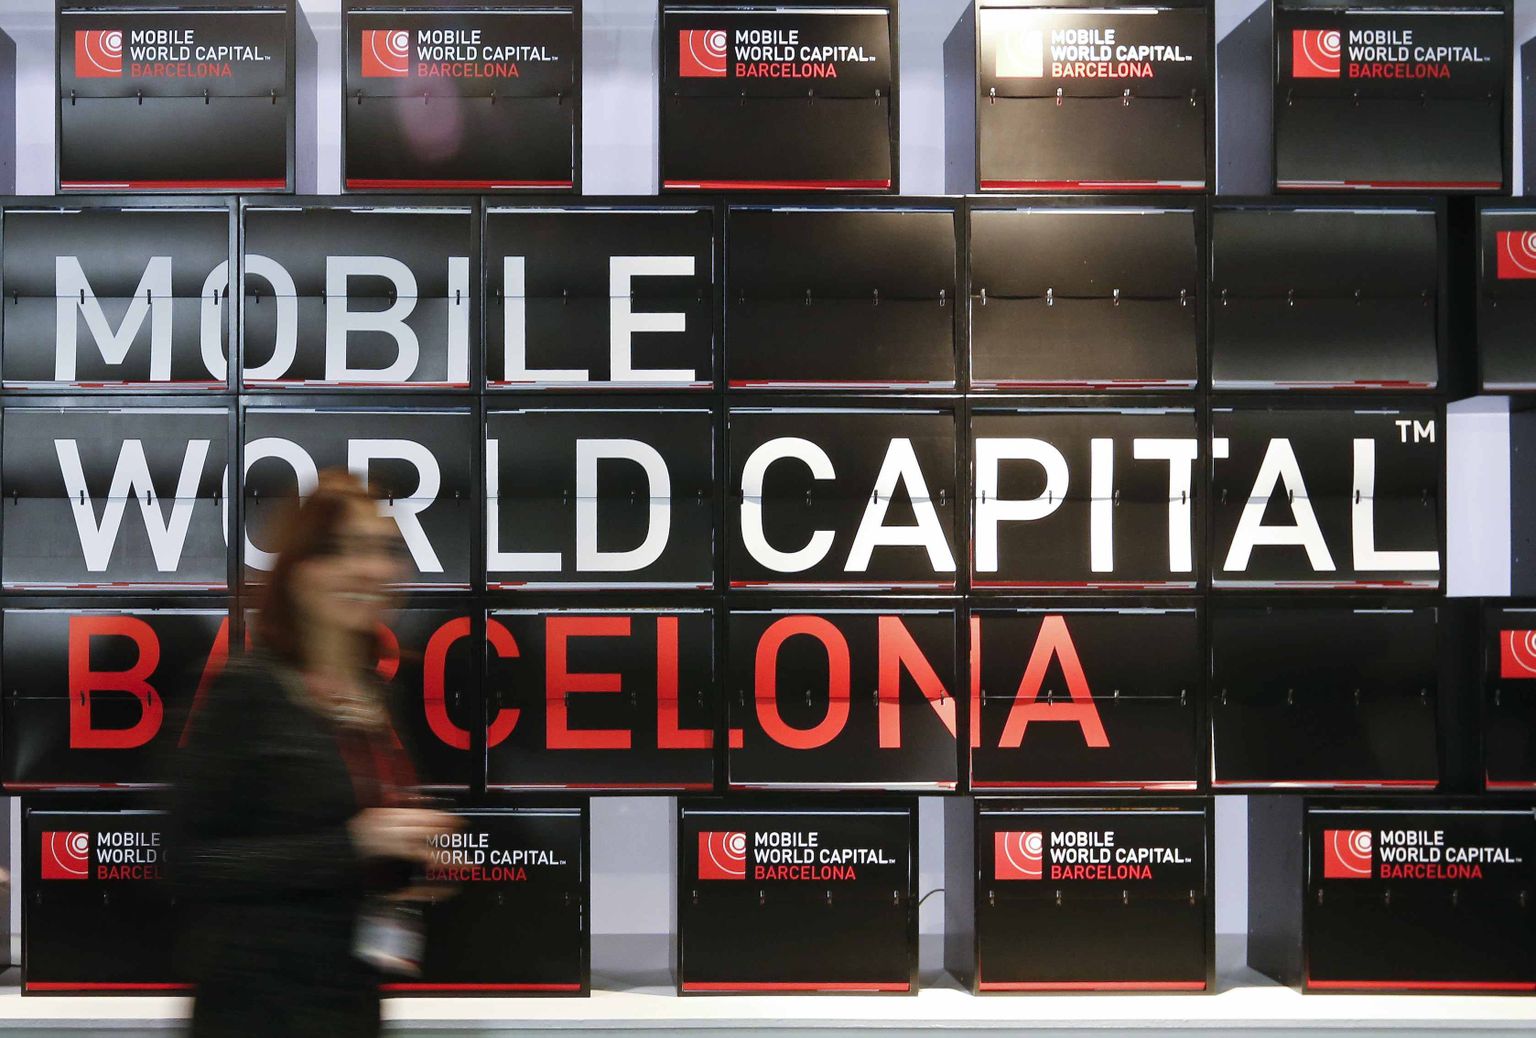 Tänu iga-aastasele Mobile World Congressile on Barcelona end juba aastaid saanud reklaaminud mobiilseadmete pealinnana.